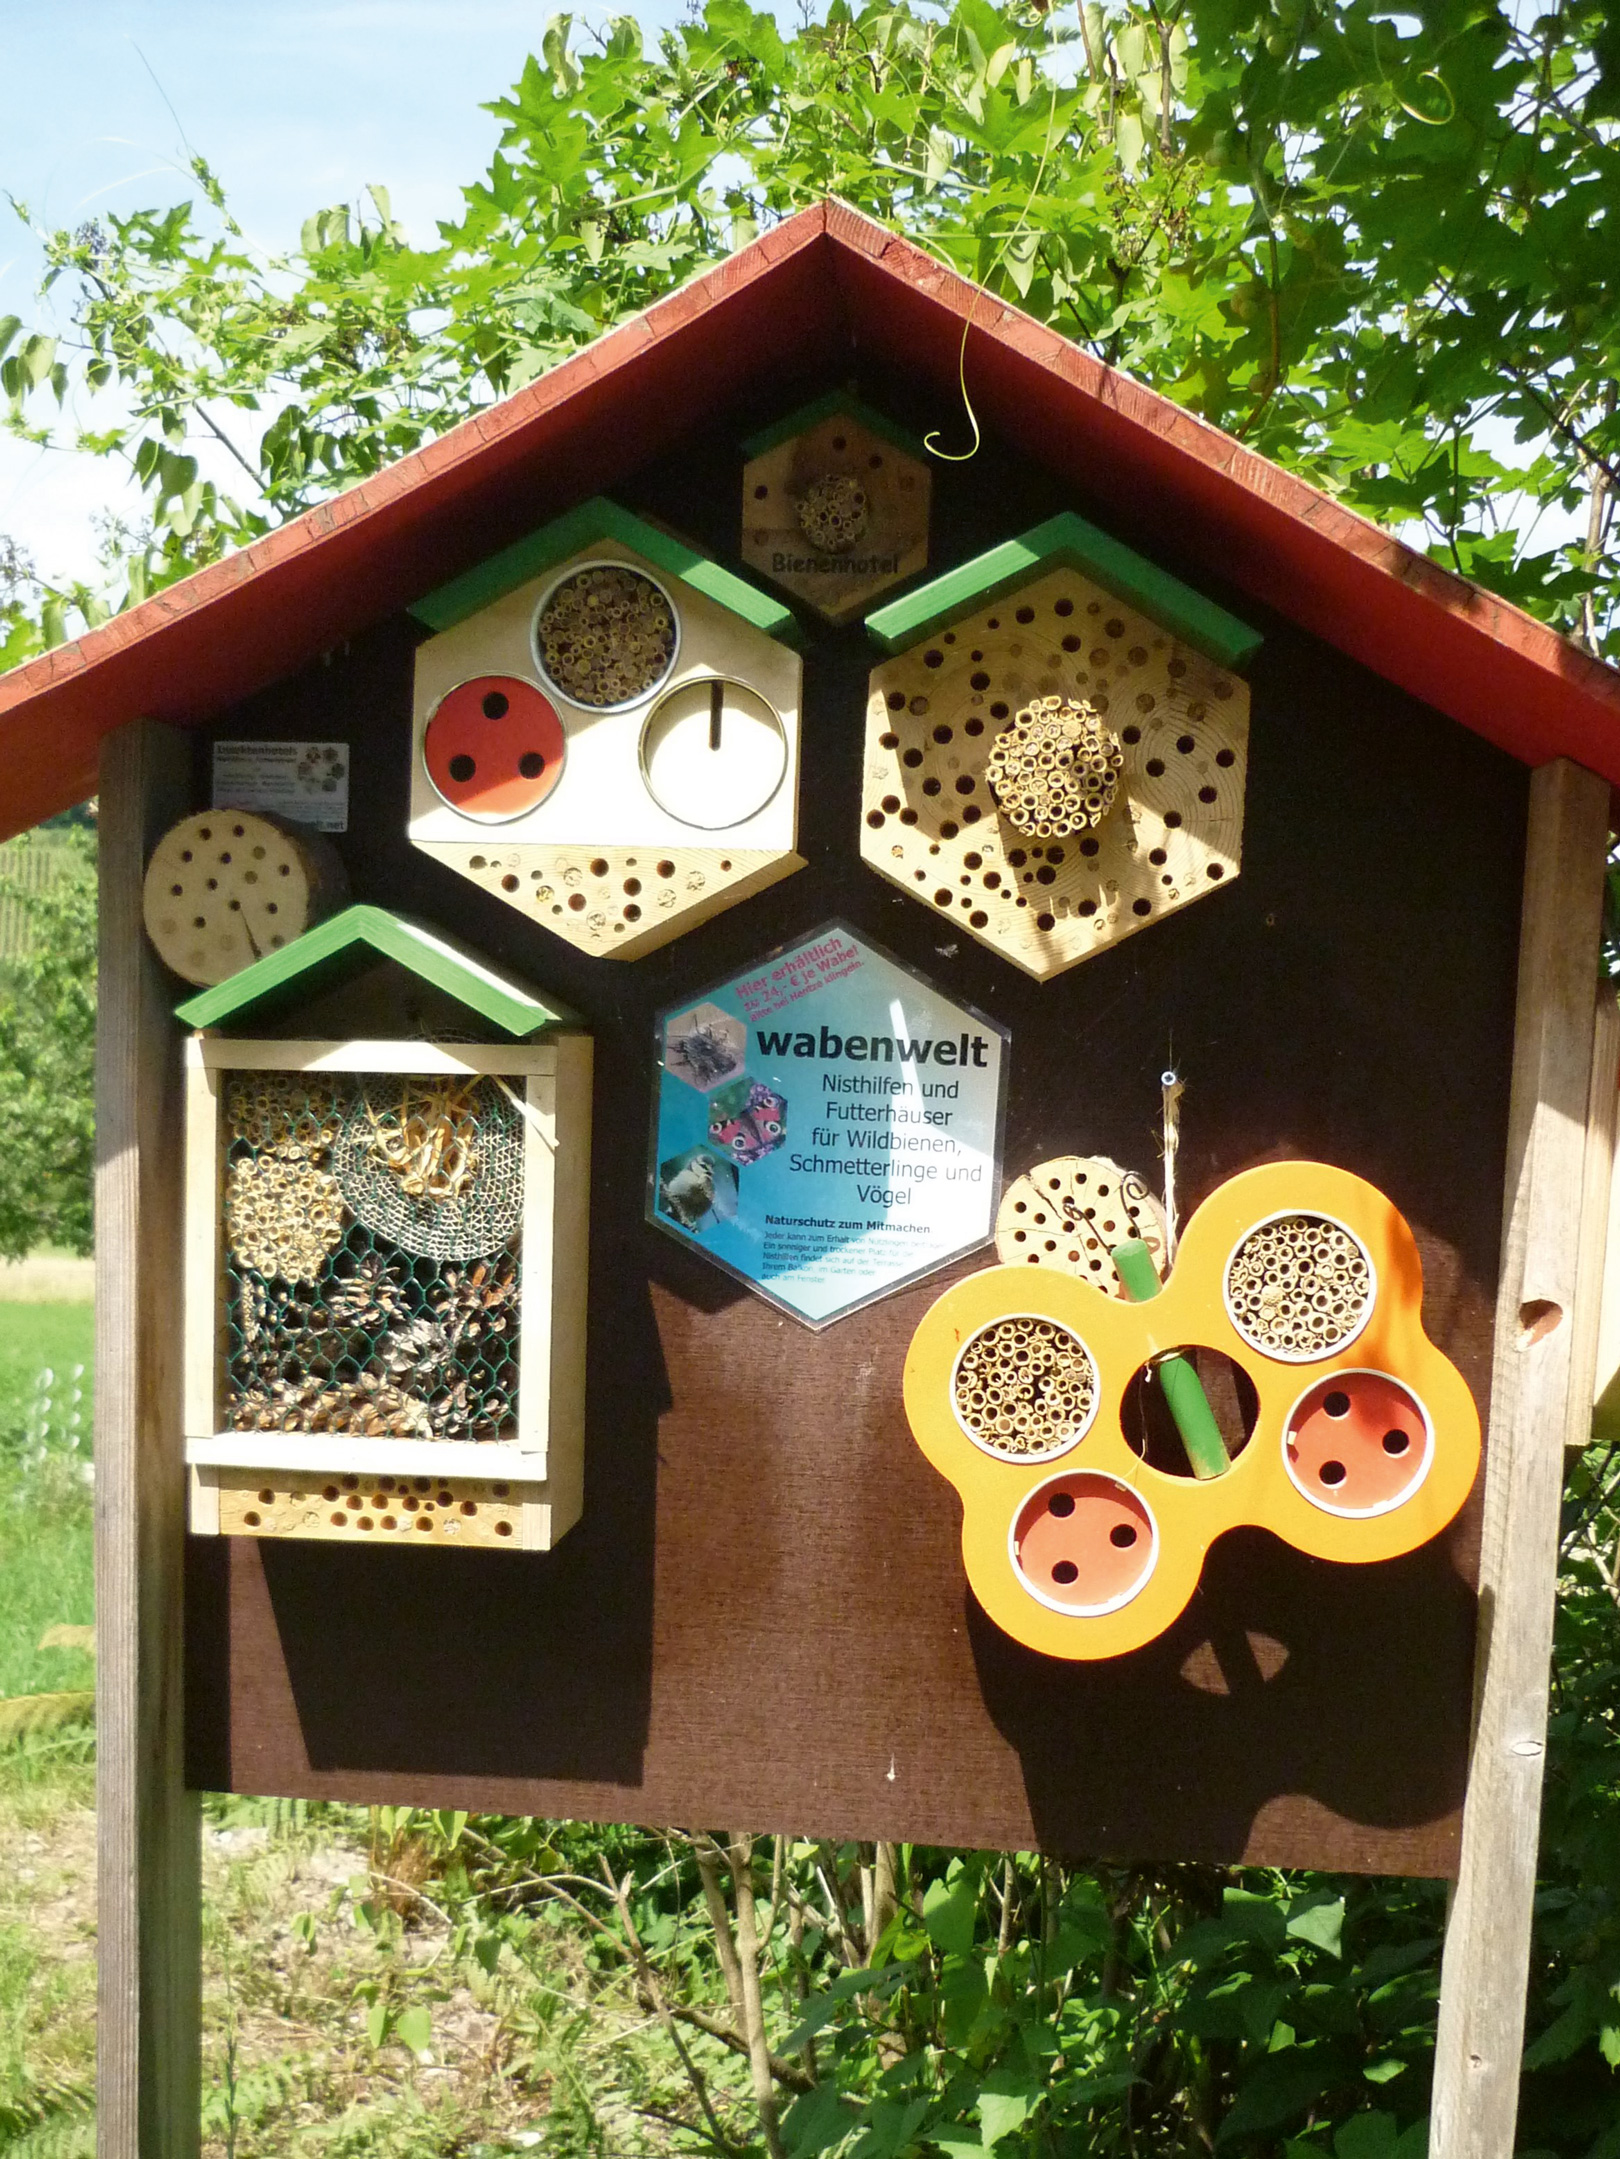 Un petit mur en bois en forme de maison avec différents lieux de nidification est visible. Sites de nidification pour différentes espèces d'abeilles sauvages et de papillons.